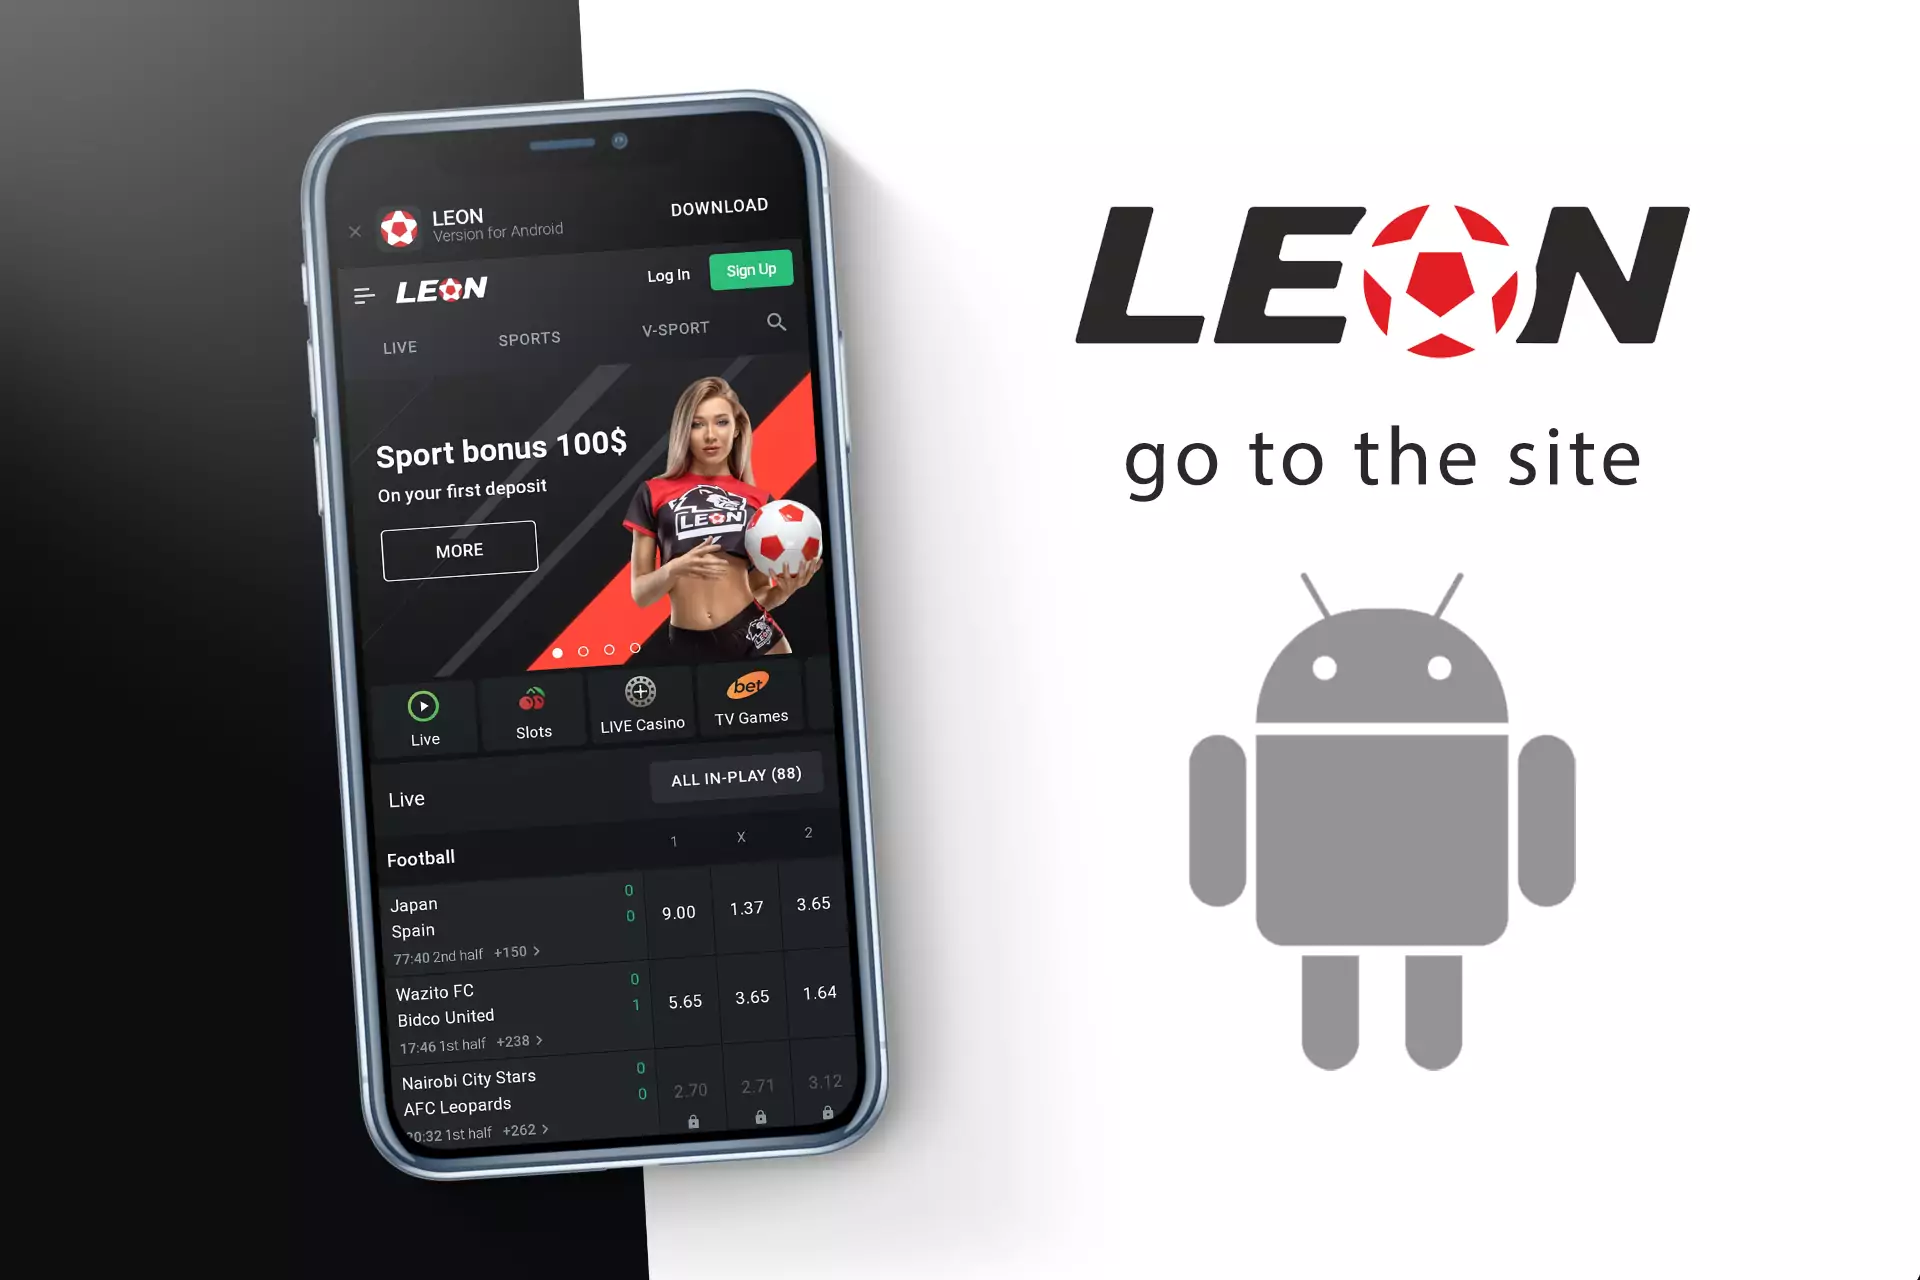 अपने मोबाइल ब्राउज़र में Leon Bet की साइट खोलें।